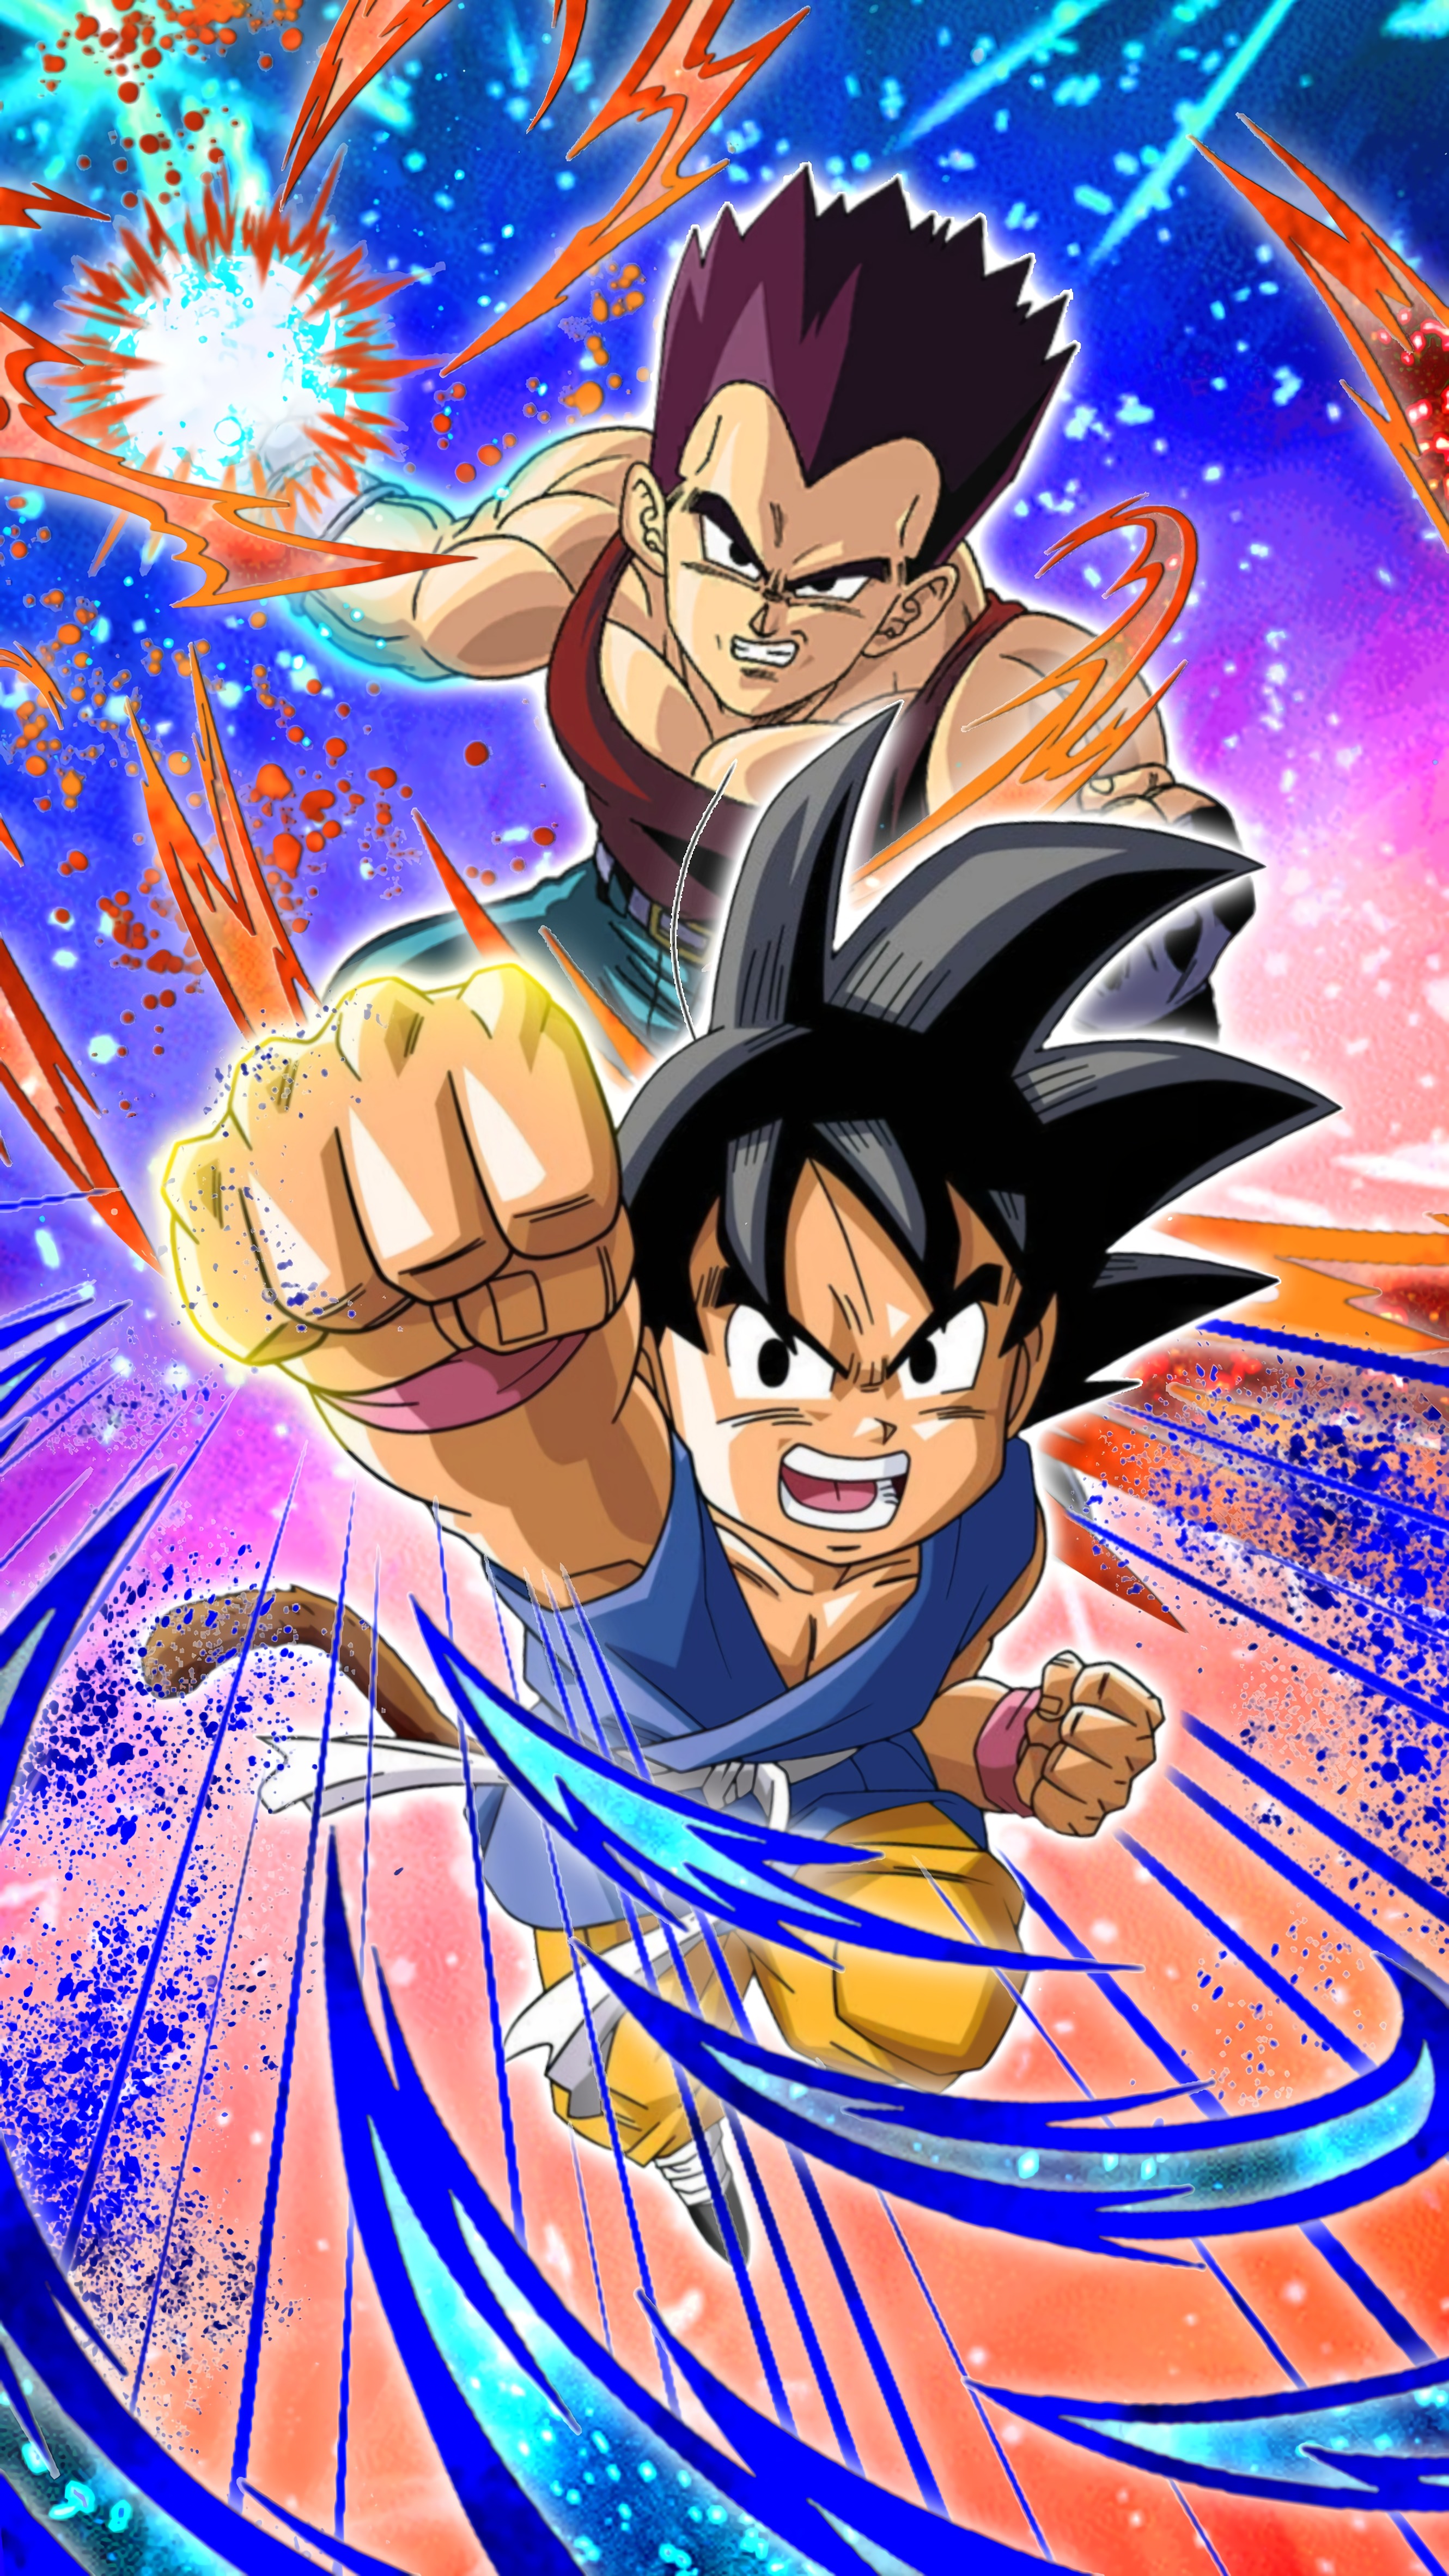 Gods vs The Super Warrior - Goku vs Vegeta, The Eternal Rivals